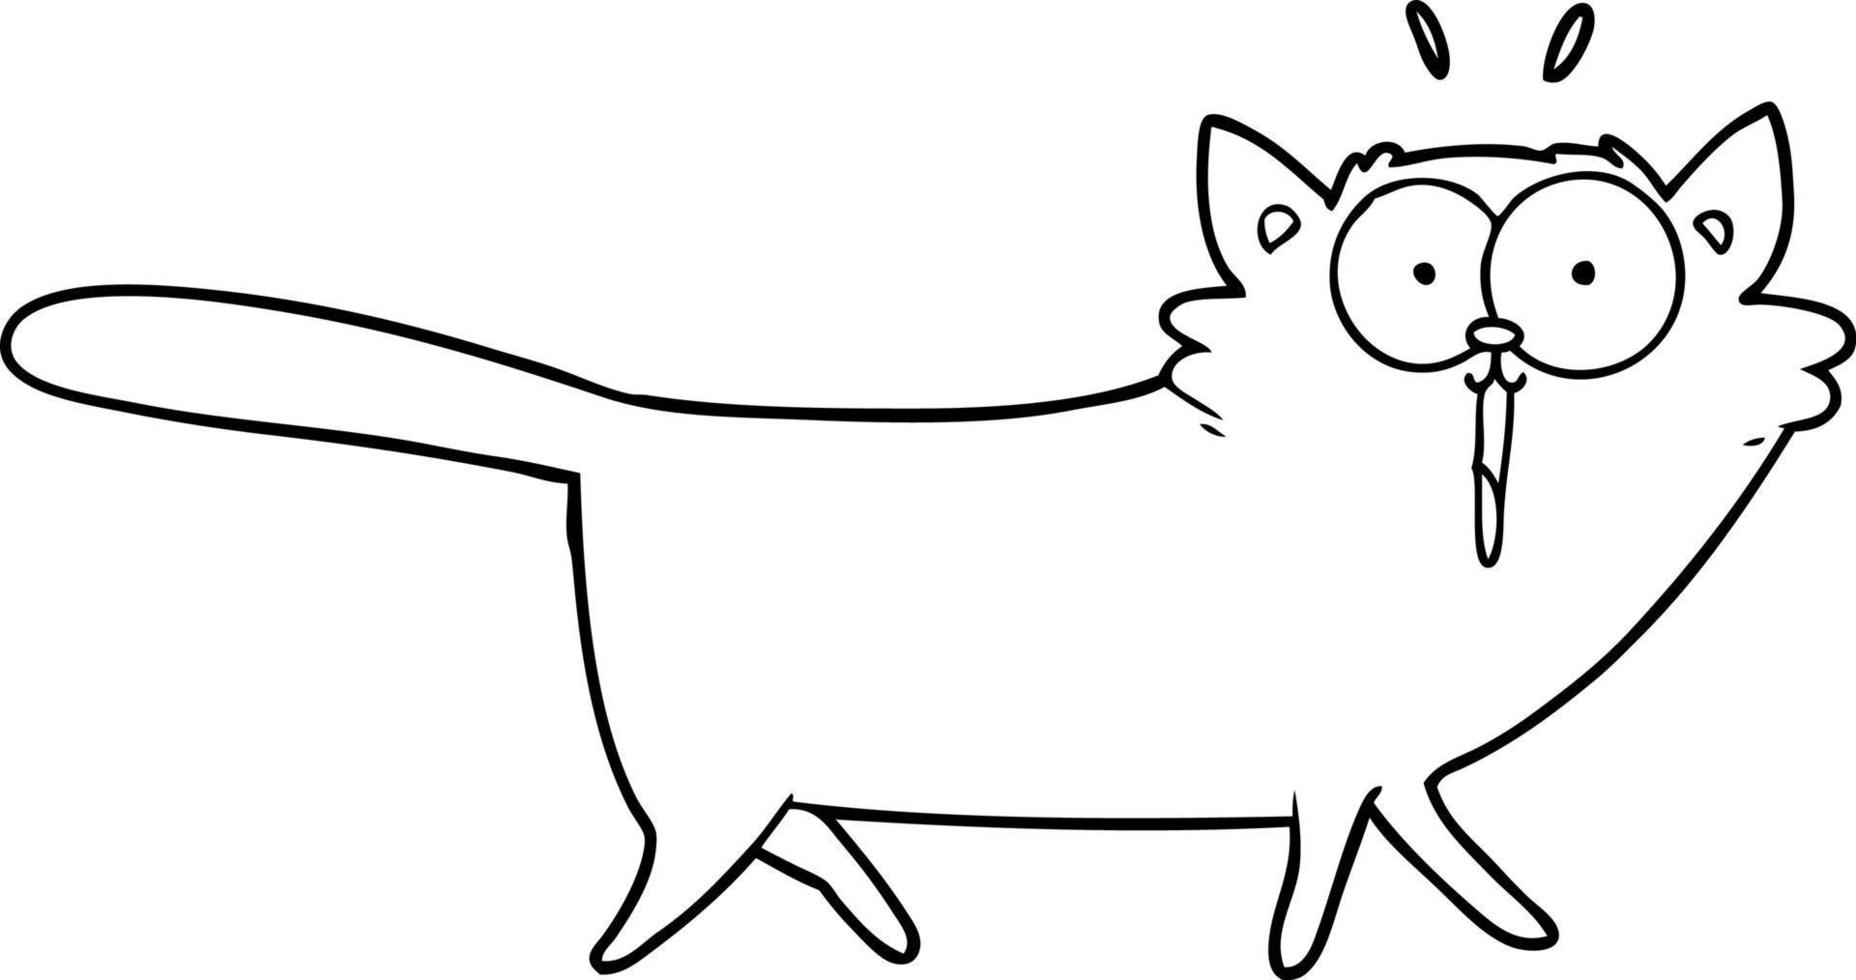 gato de desenho de linha de desenho animado vetor